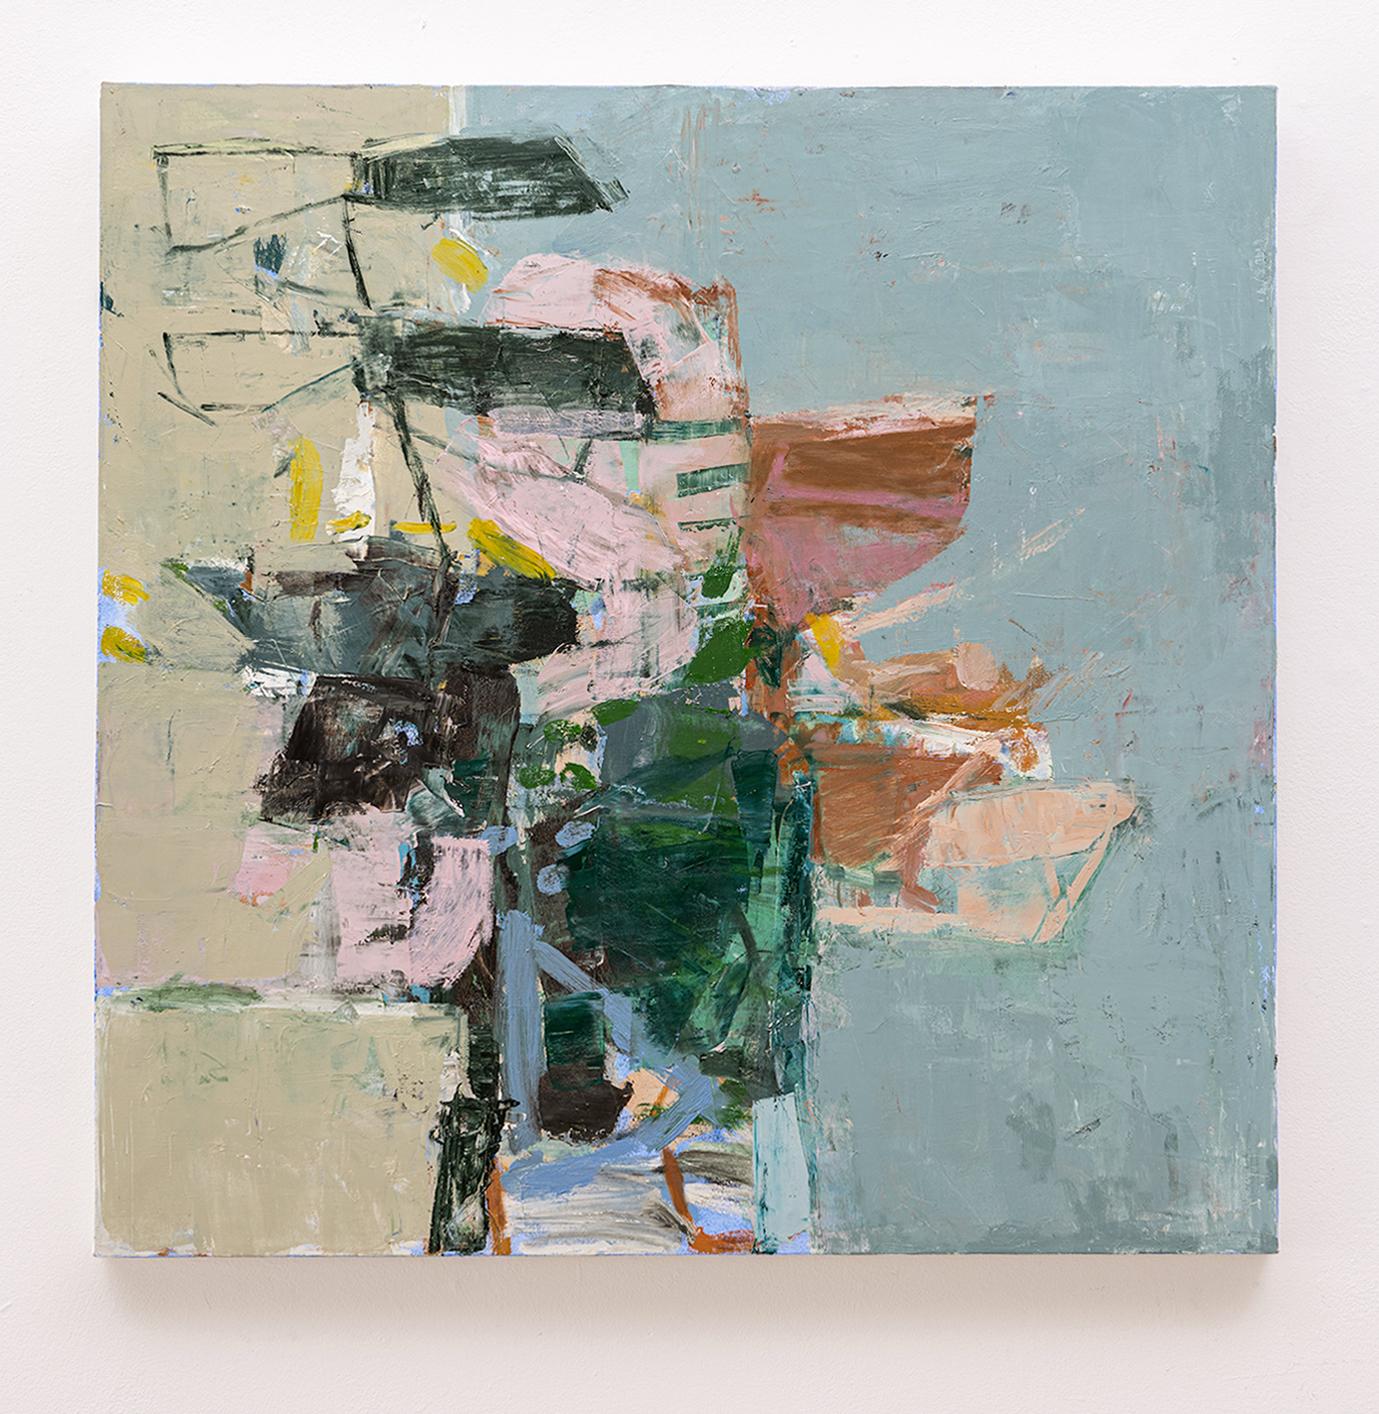 Meet June (Abstrakte expressionistisches Ölgemälde auf Leinwand in Grau, Rosa und Grün) – Painting von Jenny Nelson